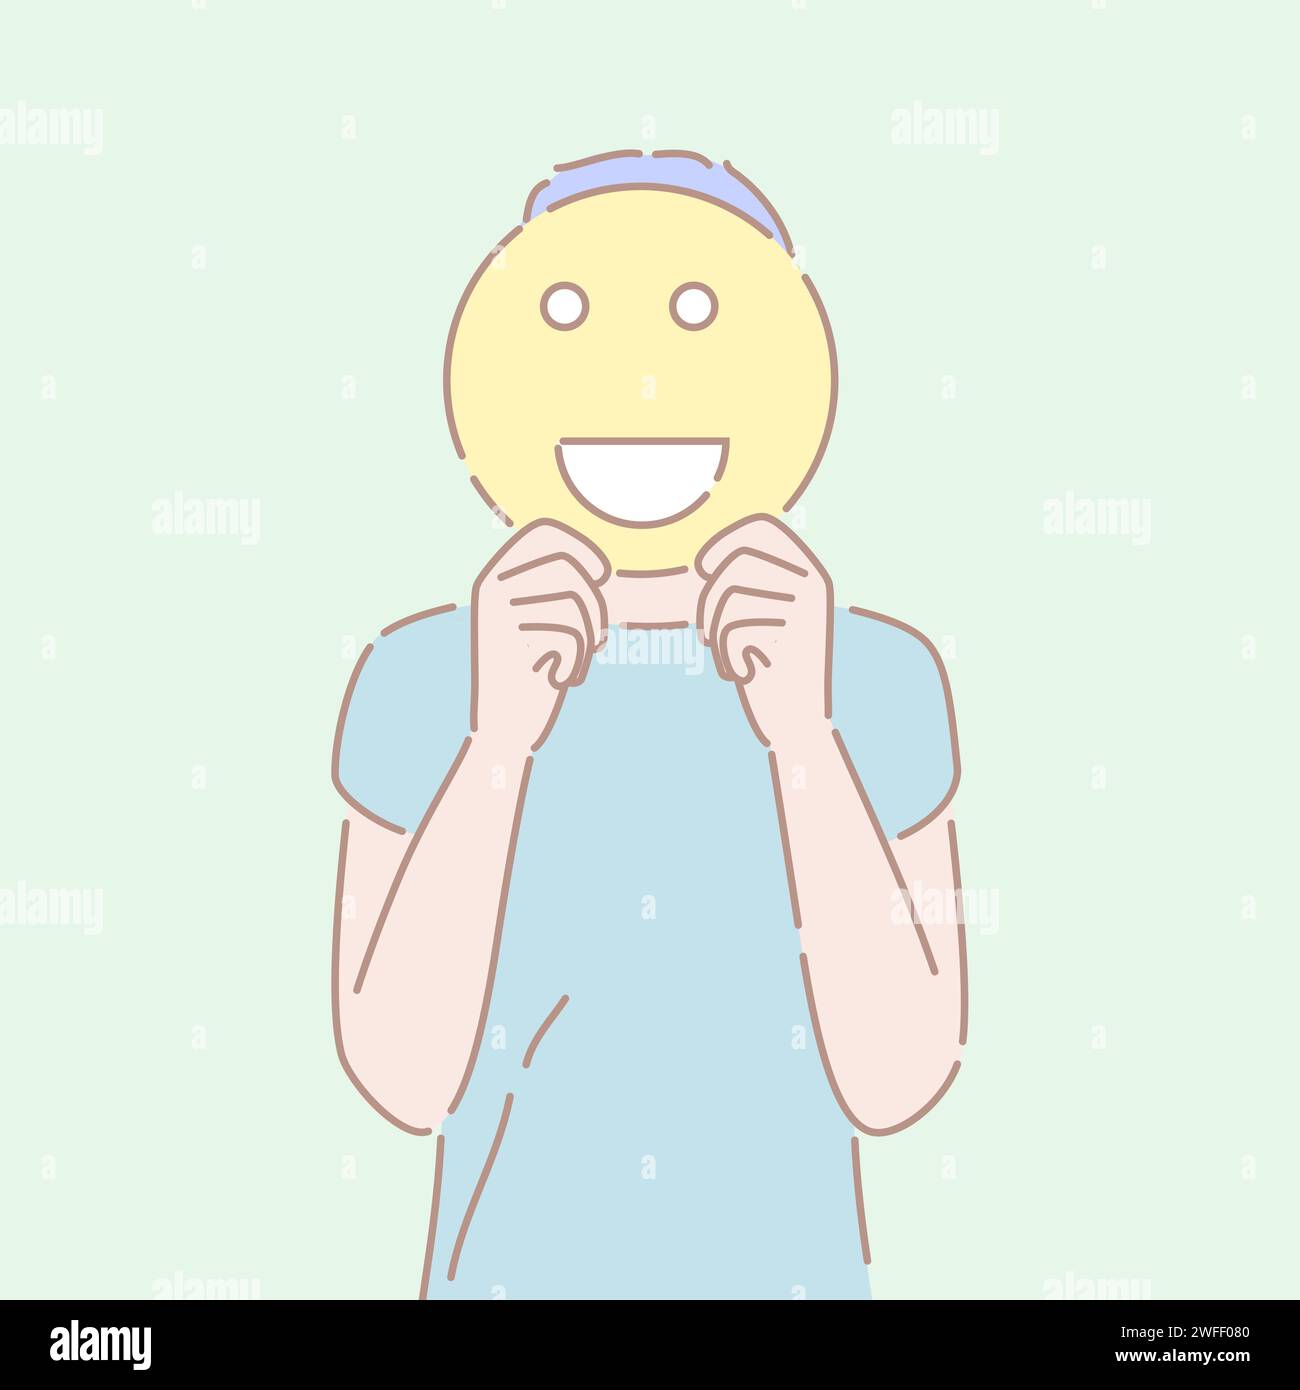 Illustrazione vettoriale disegnata a mano di un uomo con un simbolo emoji sorridente davanti al suo viso. Concetto di buona emozione, umore allegro, fac positivo Illustrazione Vettoriale